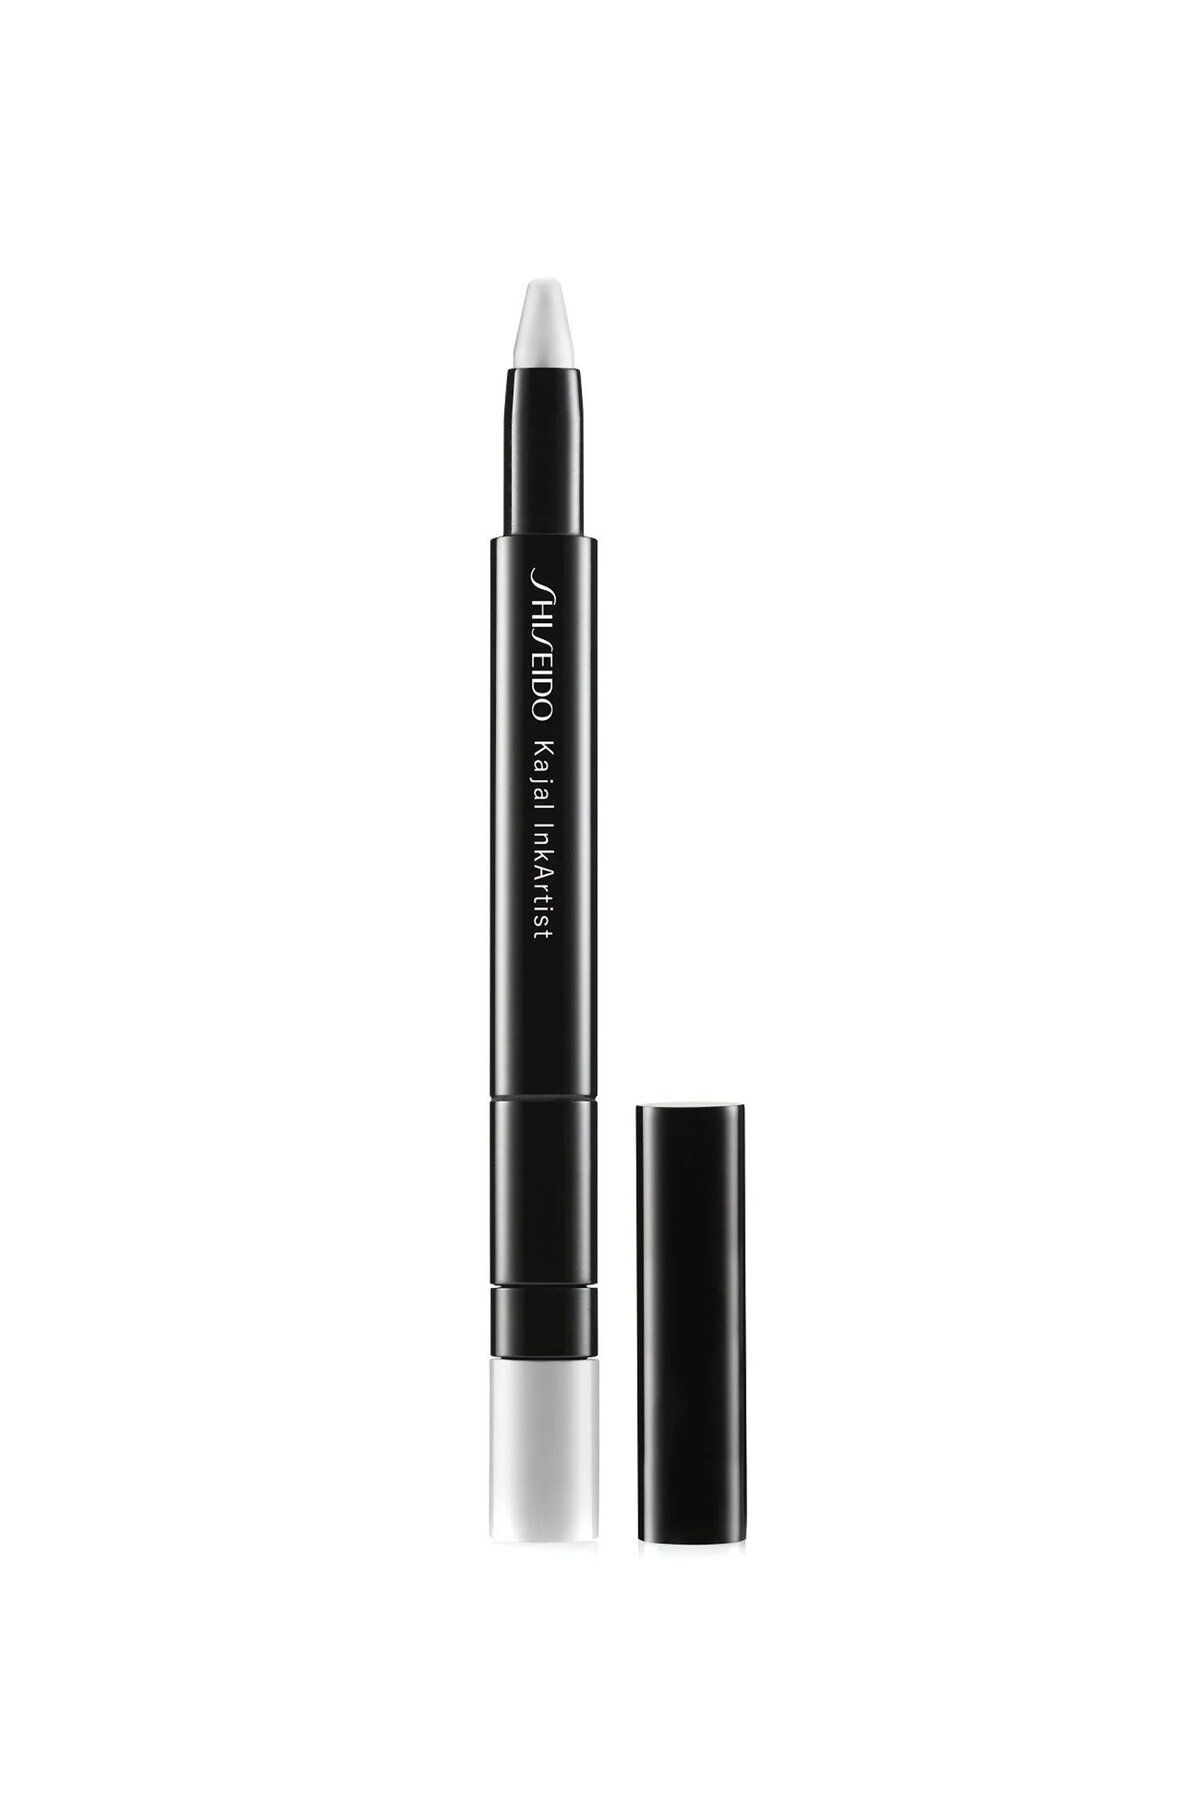 Shiseido Kajal InkArtist - 4’ü 1 Arada Kalem Göz Kalemi, Kajal, Far, Kaş Kalemi Olarak Kullanılabilir 0,8gr